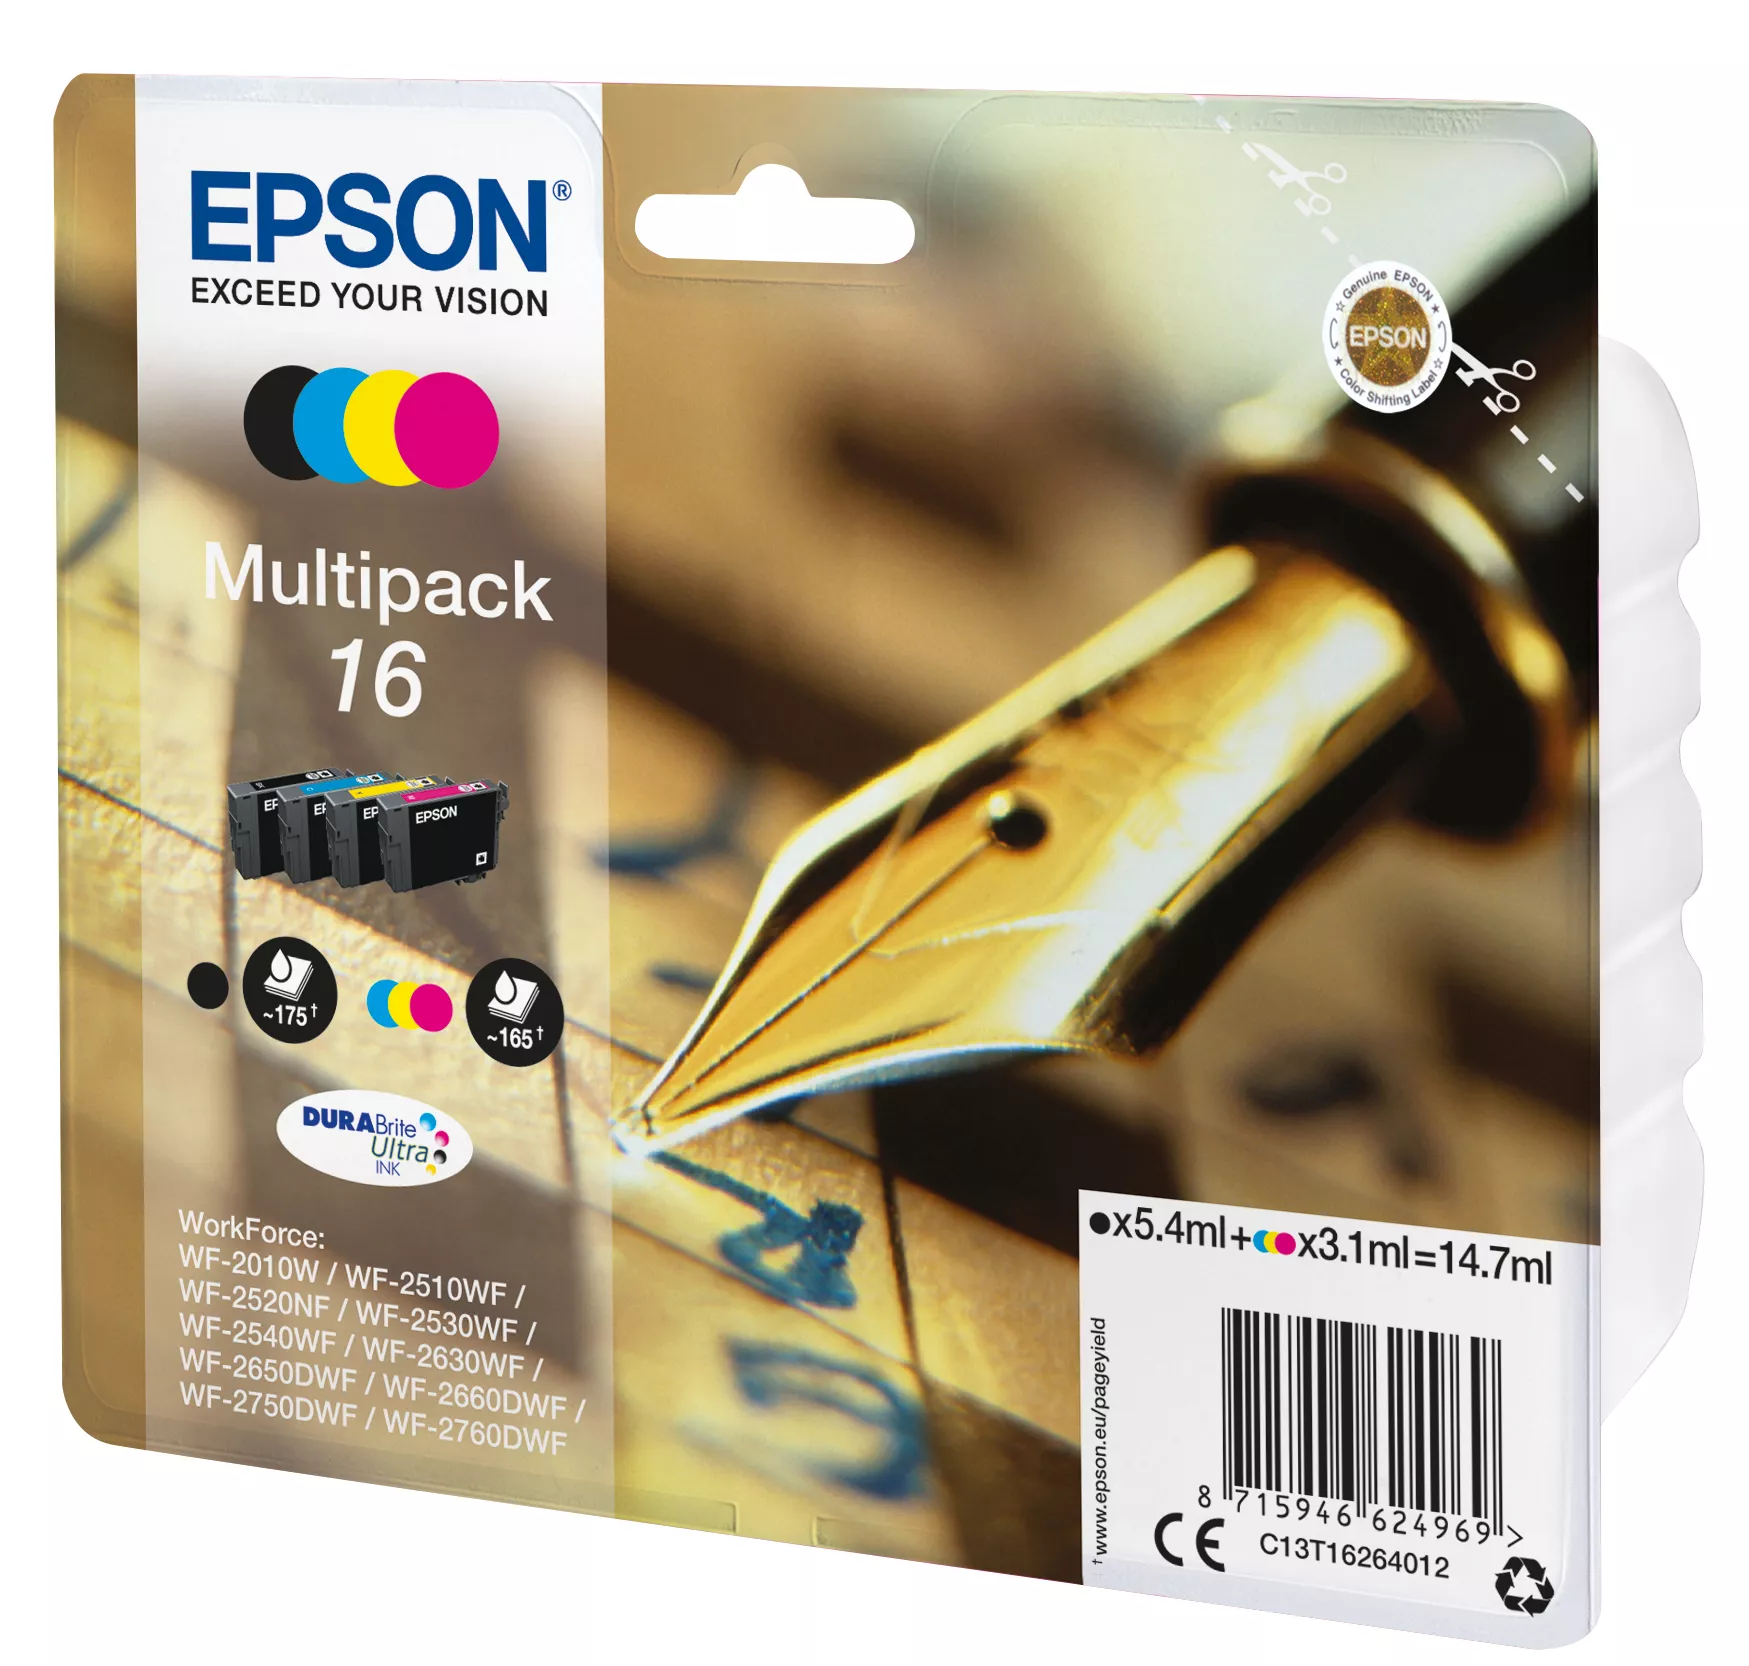 Vente EPSON 16 cartouche dencre noir et tricolore capacité Epson au meilleur prix - visuel 2